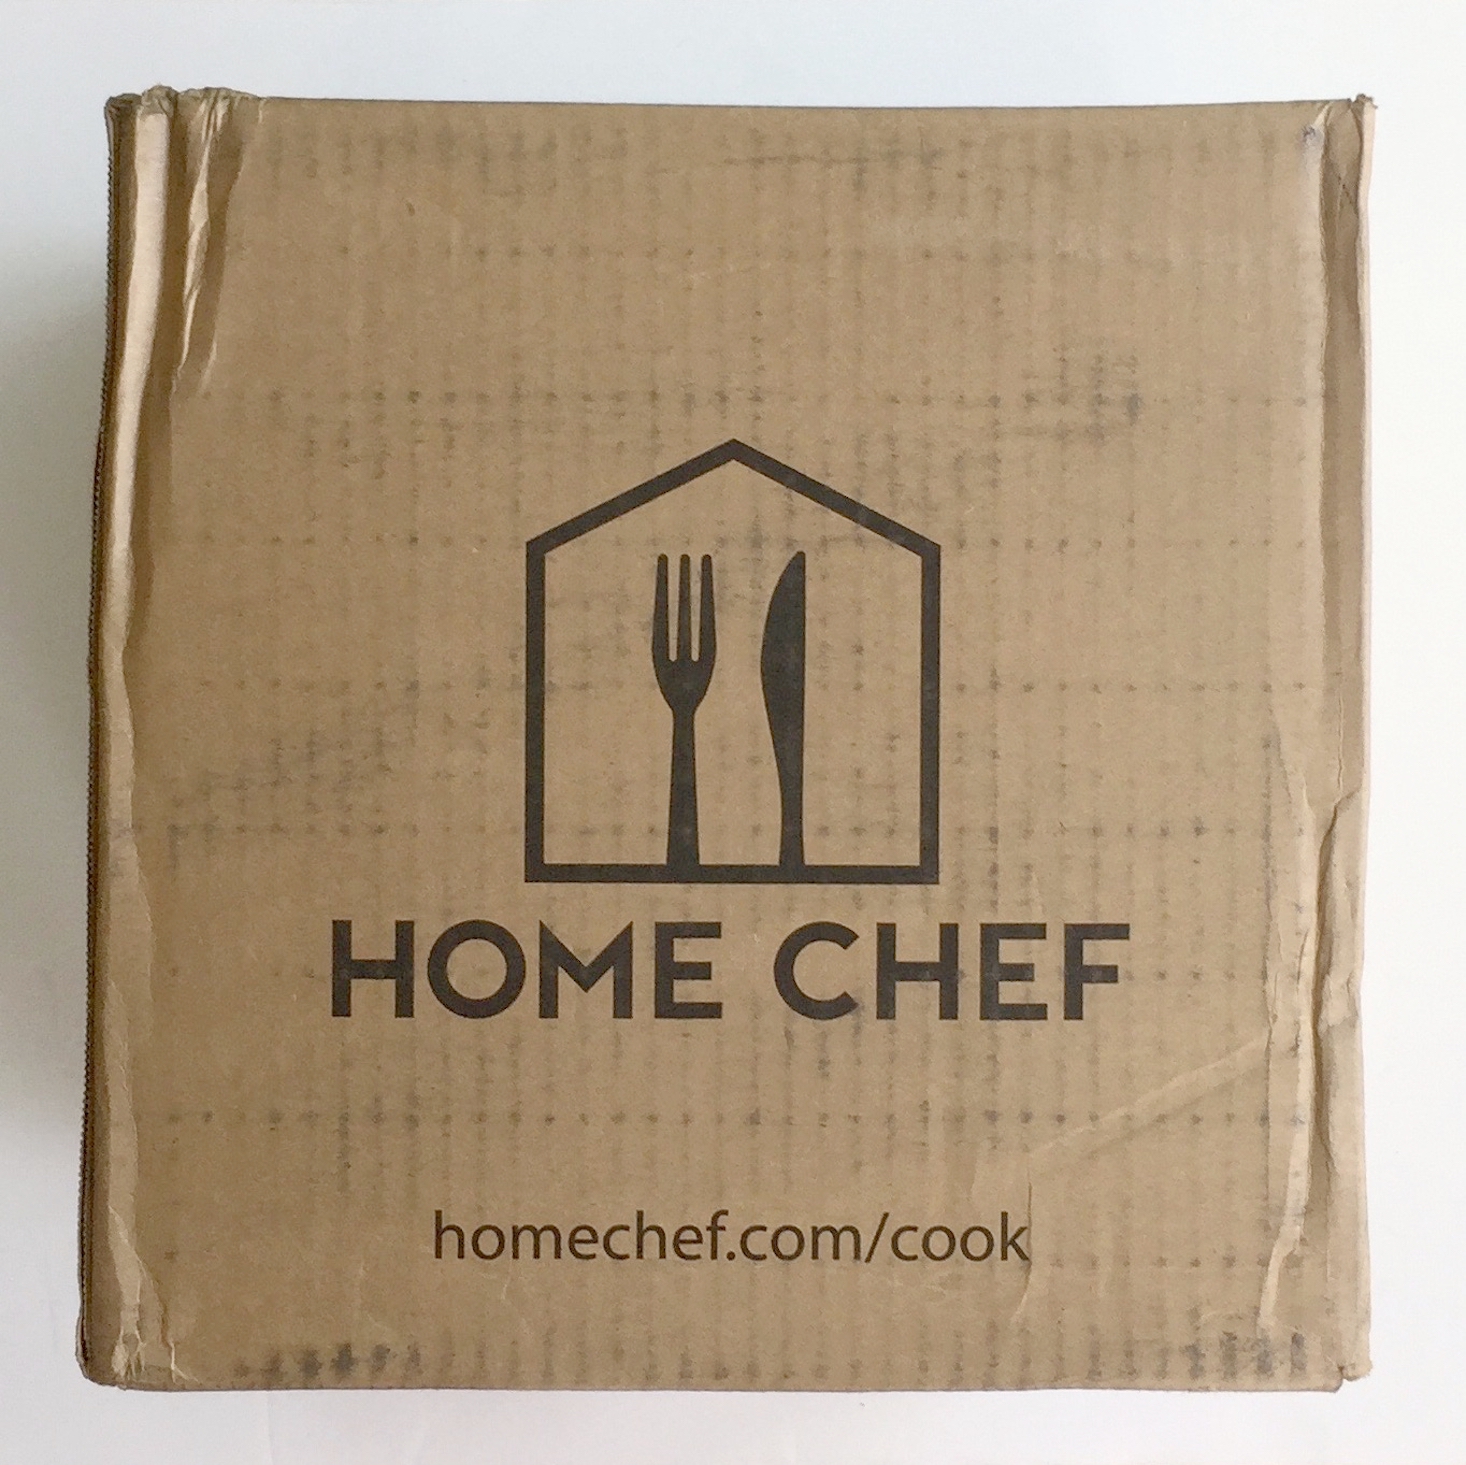 Home-chef-March-2017-box